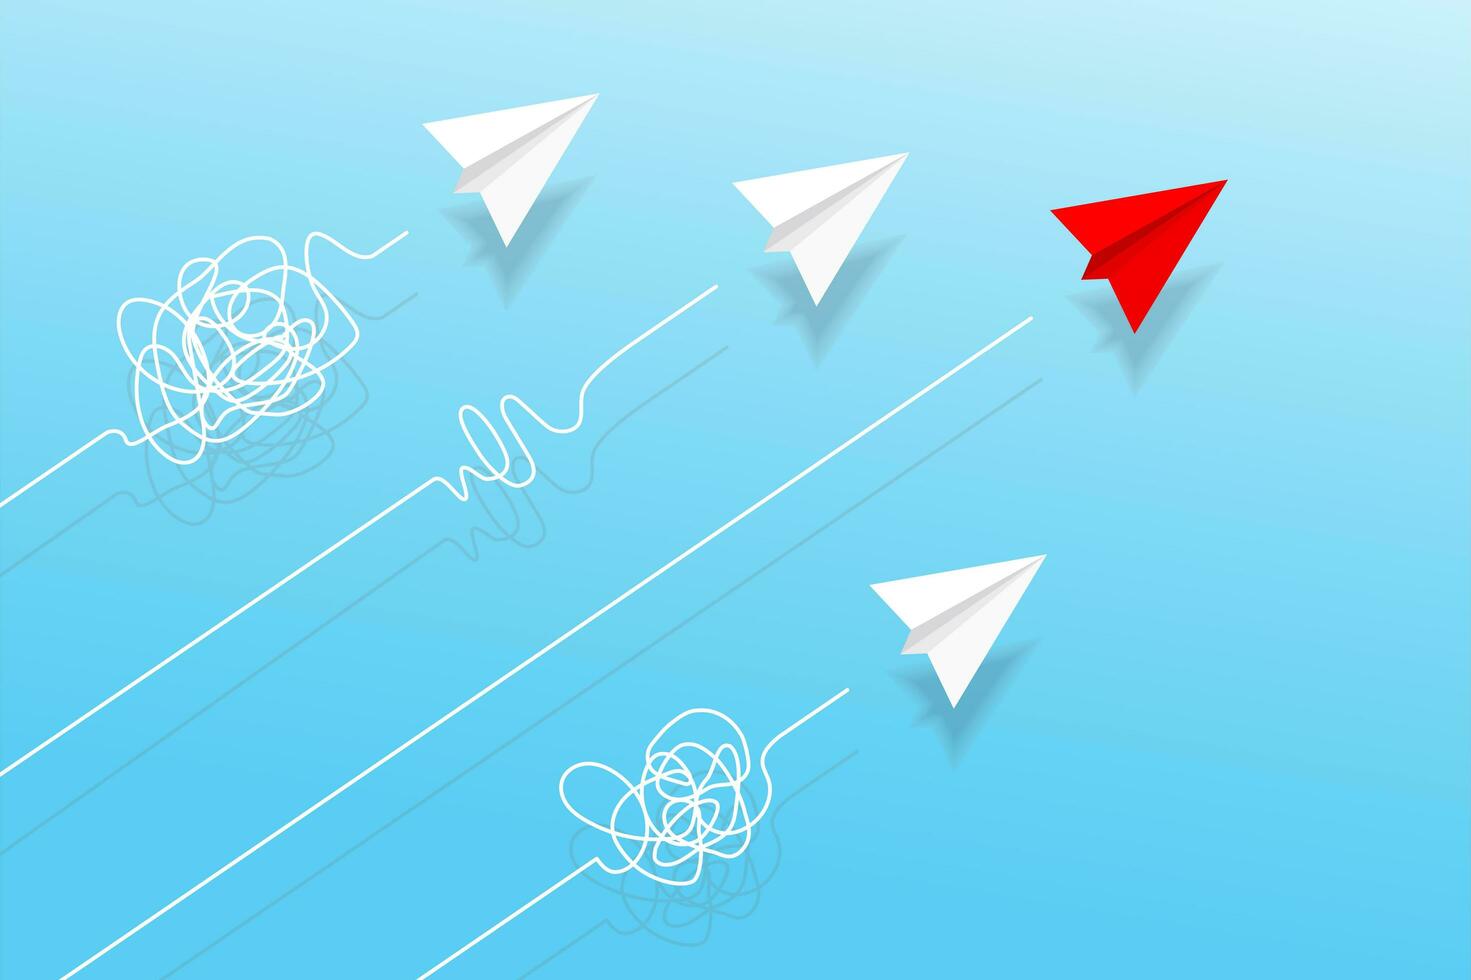 top visie van papier vliegtuigen met tekening lijn in de lucht. origami vliegtuigen. meetkundig vorm symbool. concept van bedrijf, leiderschap, oplossing, succes, opleiding, teamwerk, missie doelwit, denken verschillend foto